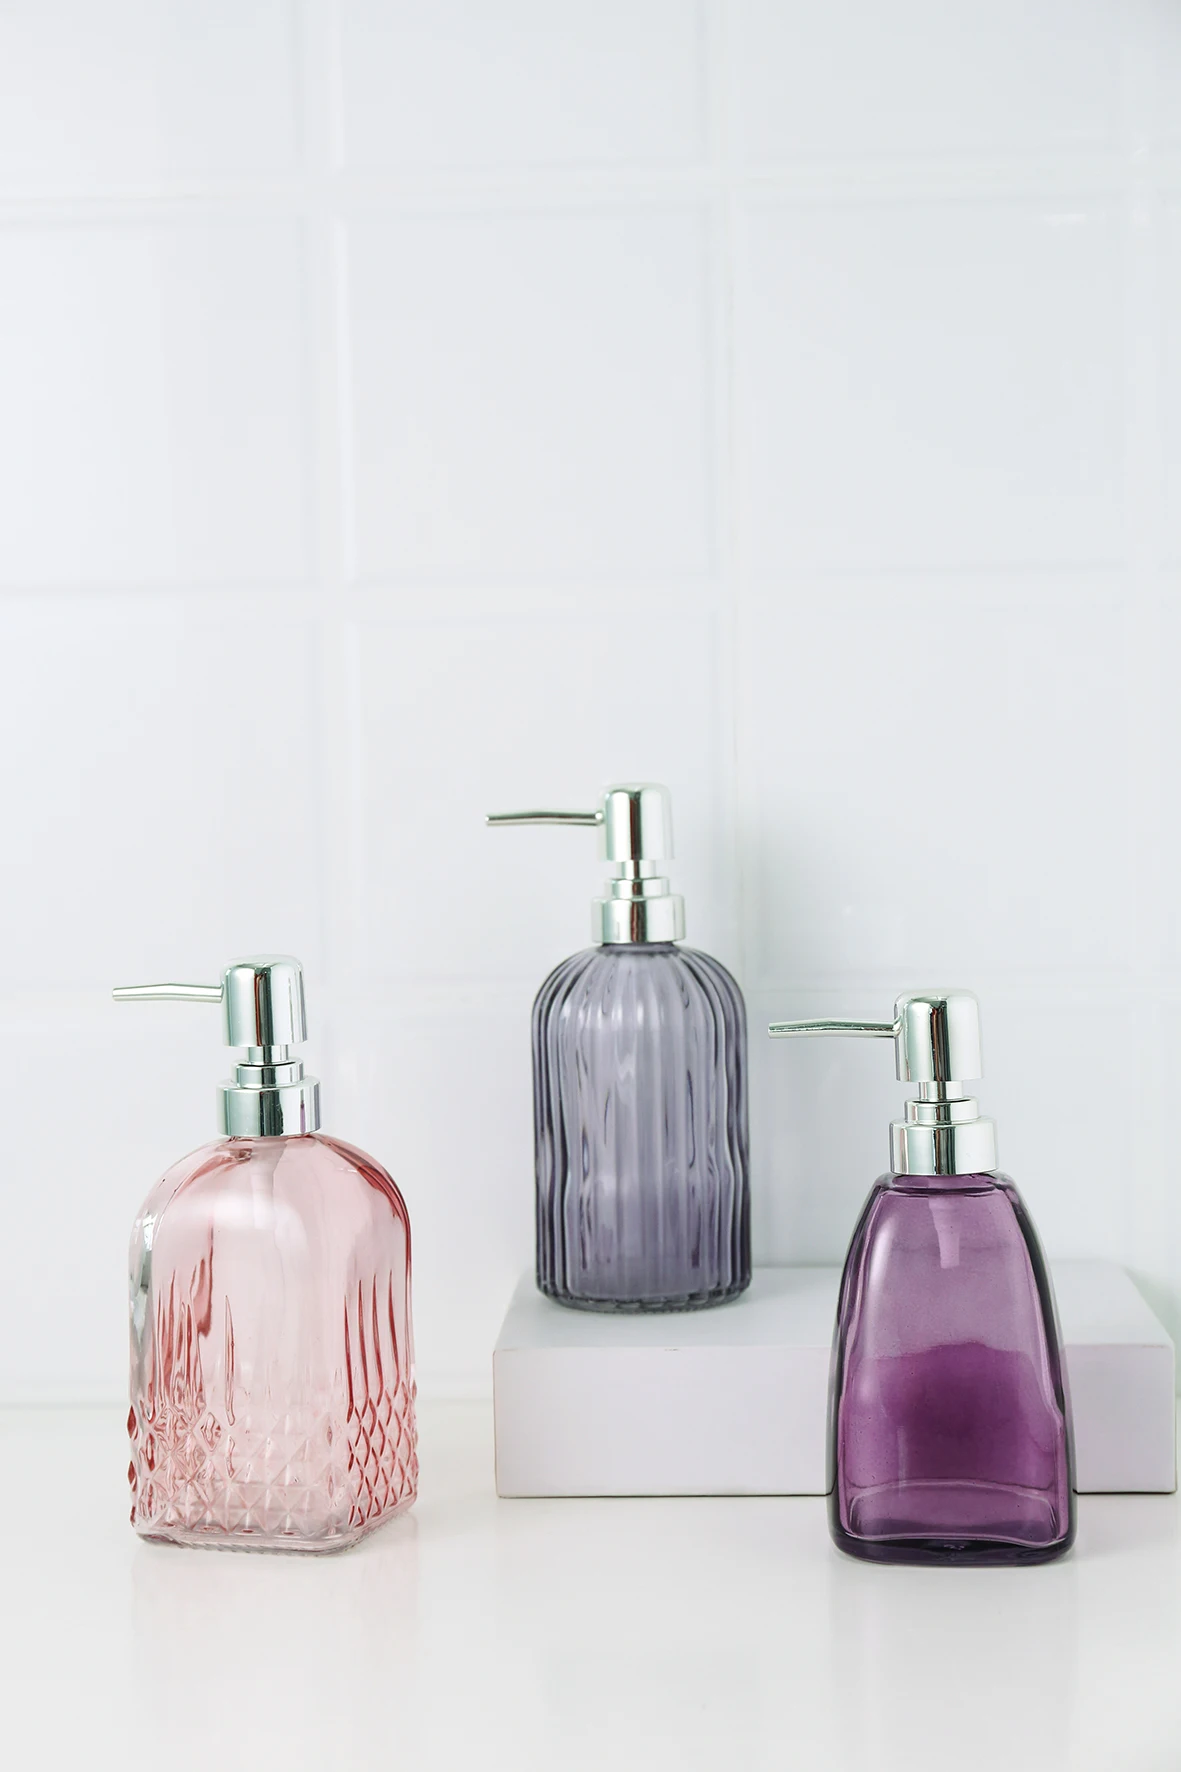 Bathroom Glass Liquid Soap Dispenser - Buy Glass Soap Dispenser,Fancy